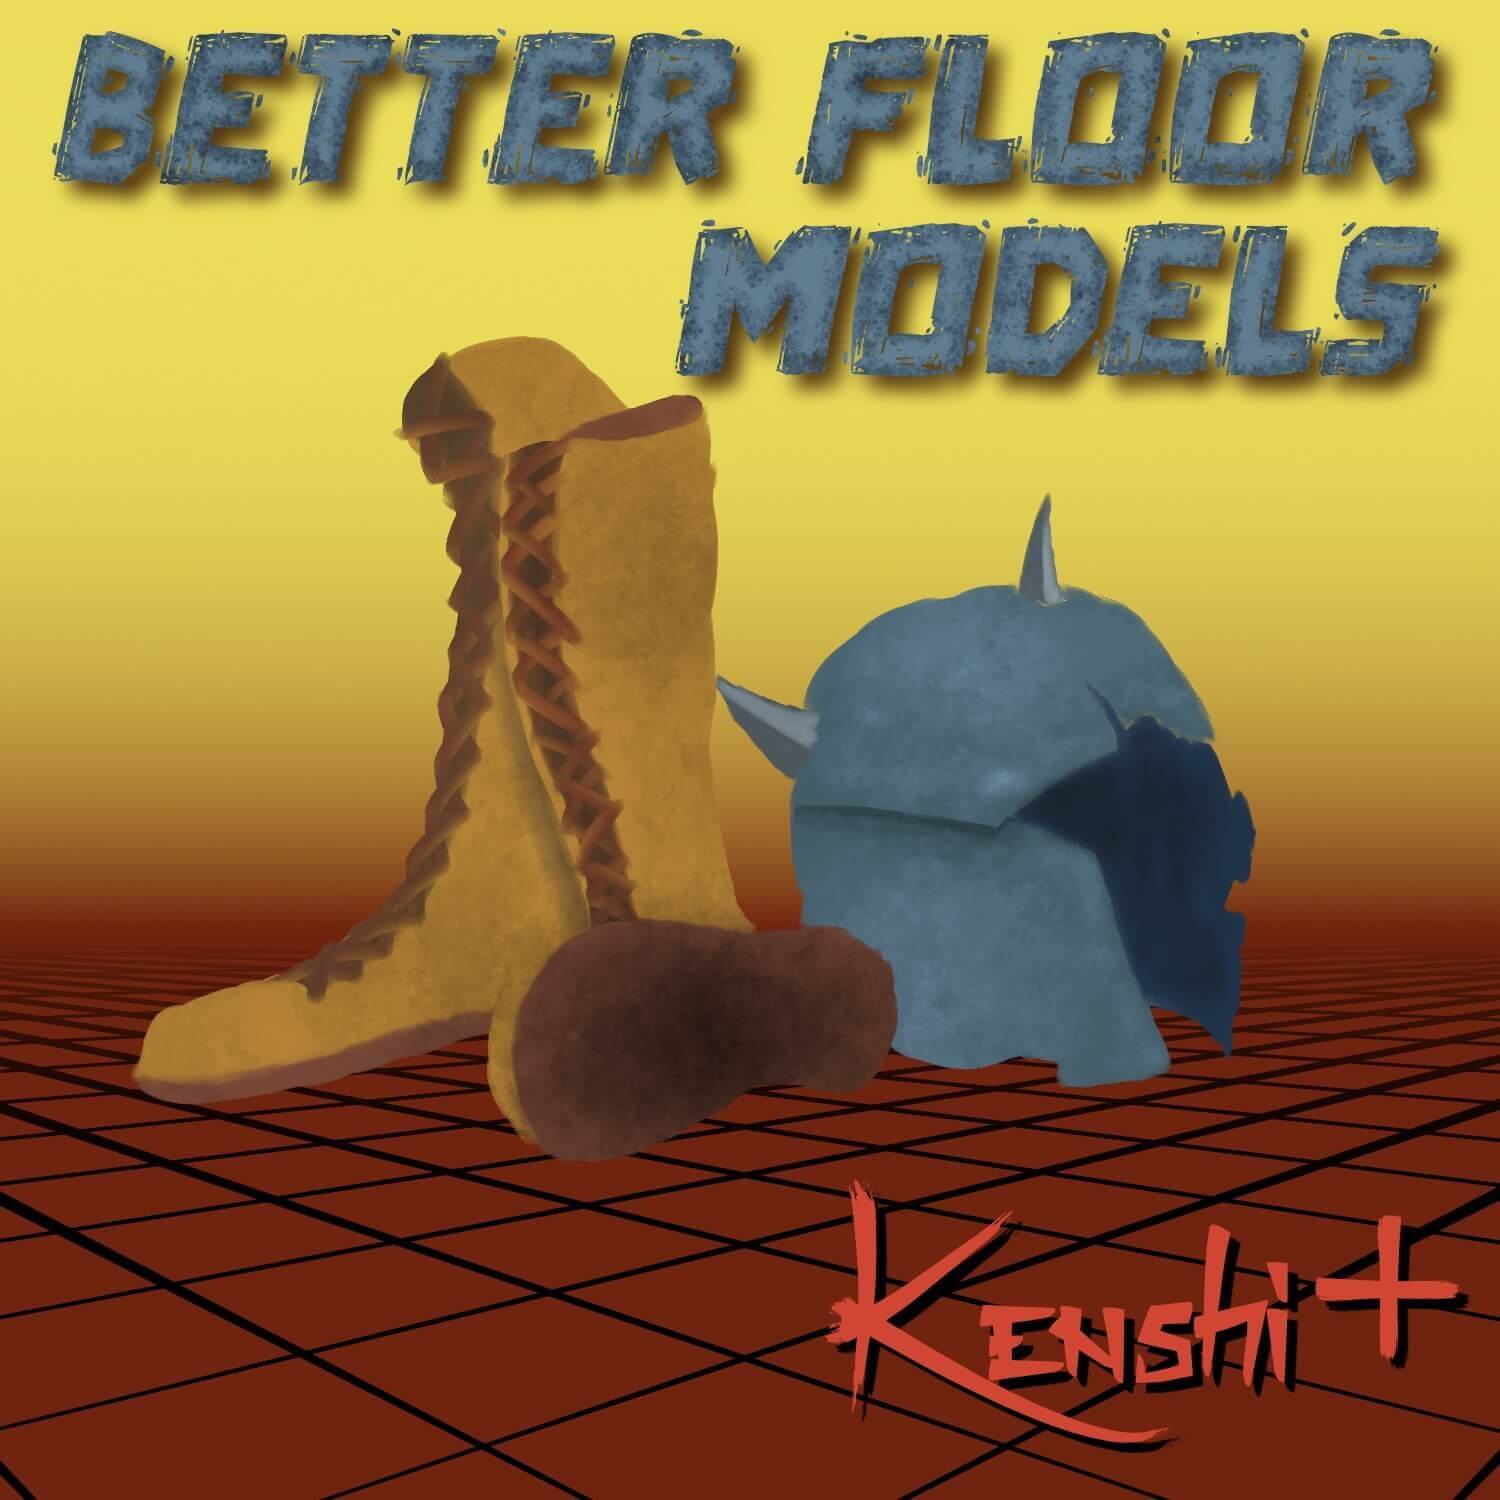 Better Floor Models / Улучшенные модели предметов на полу